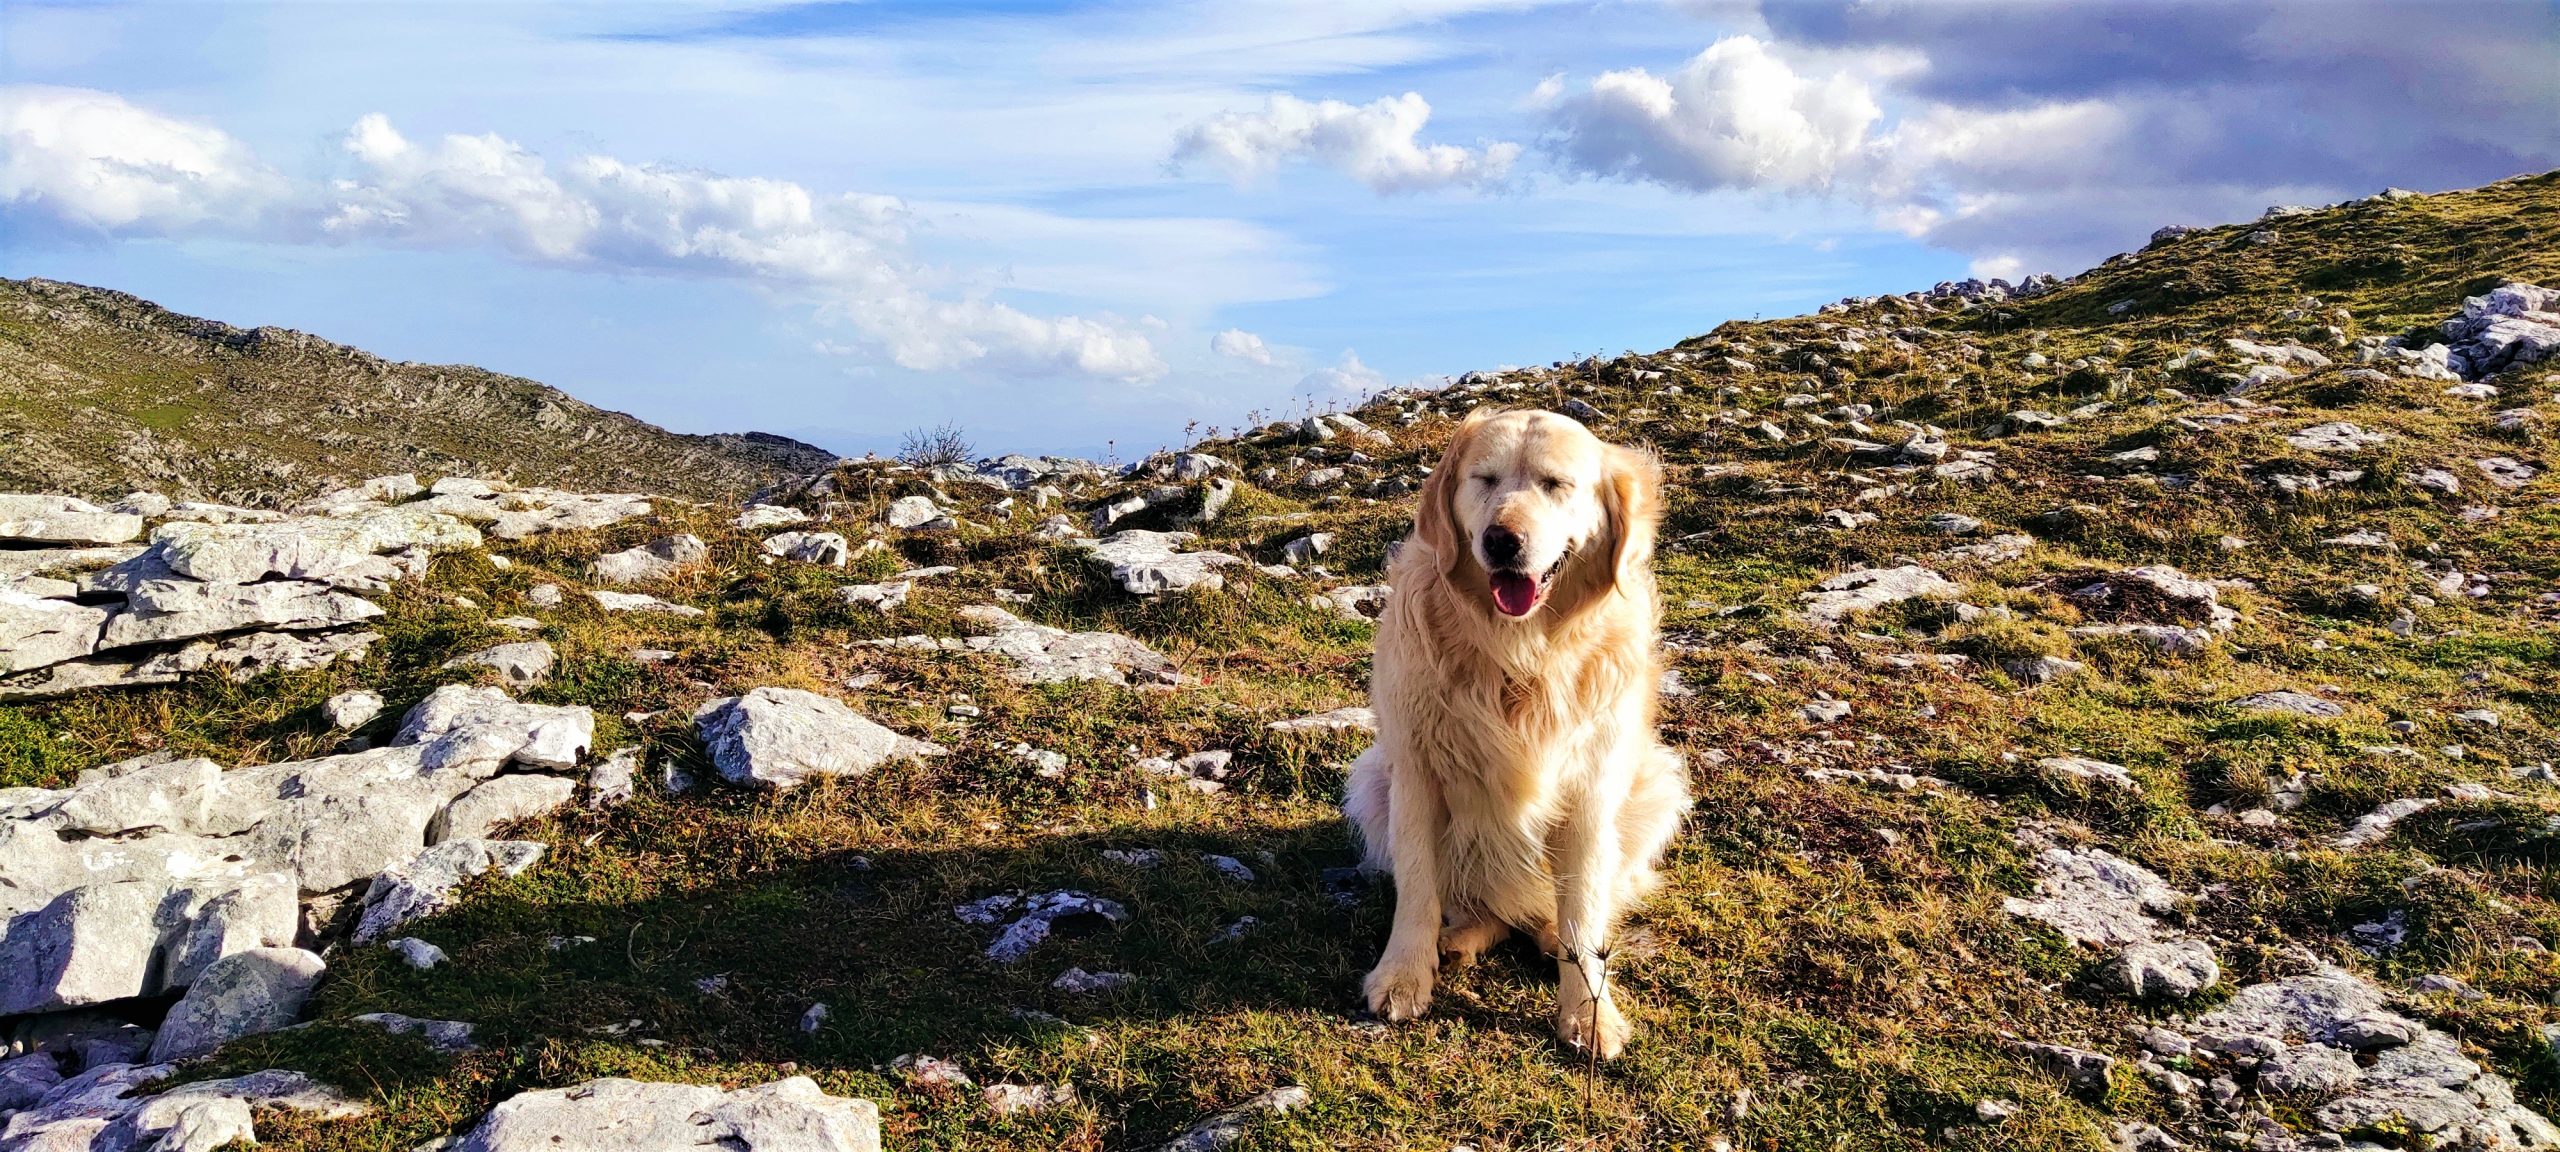 Obtener resultados SEO al buscar "senderismo con perros Asturias" en Google